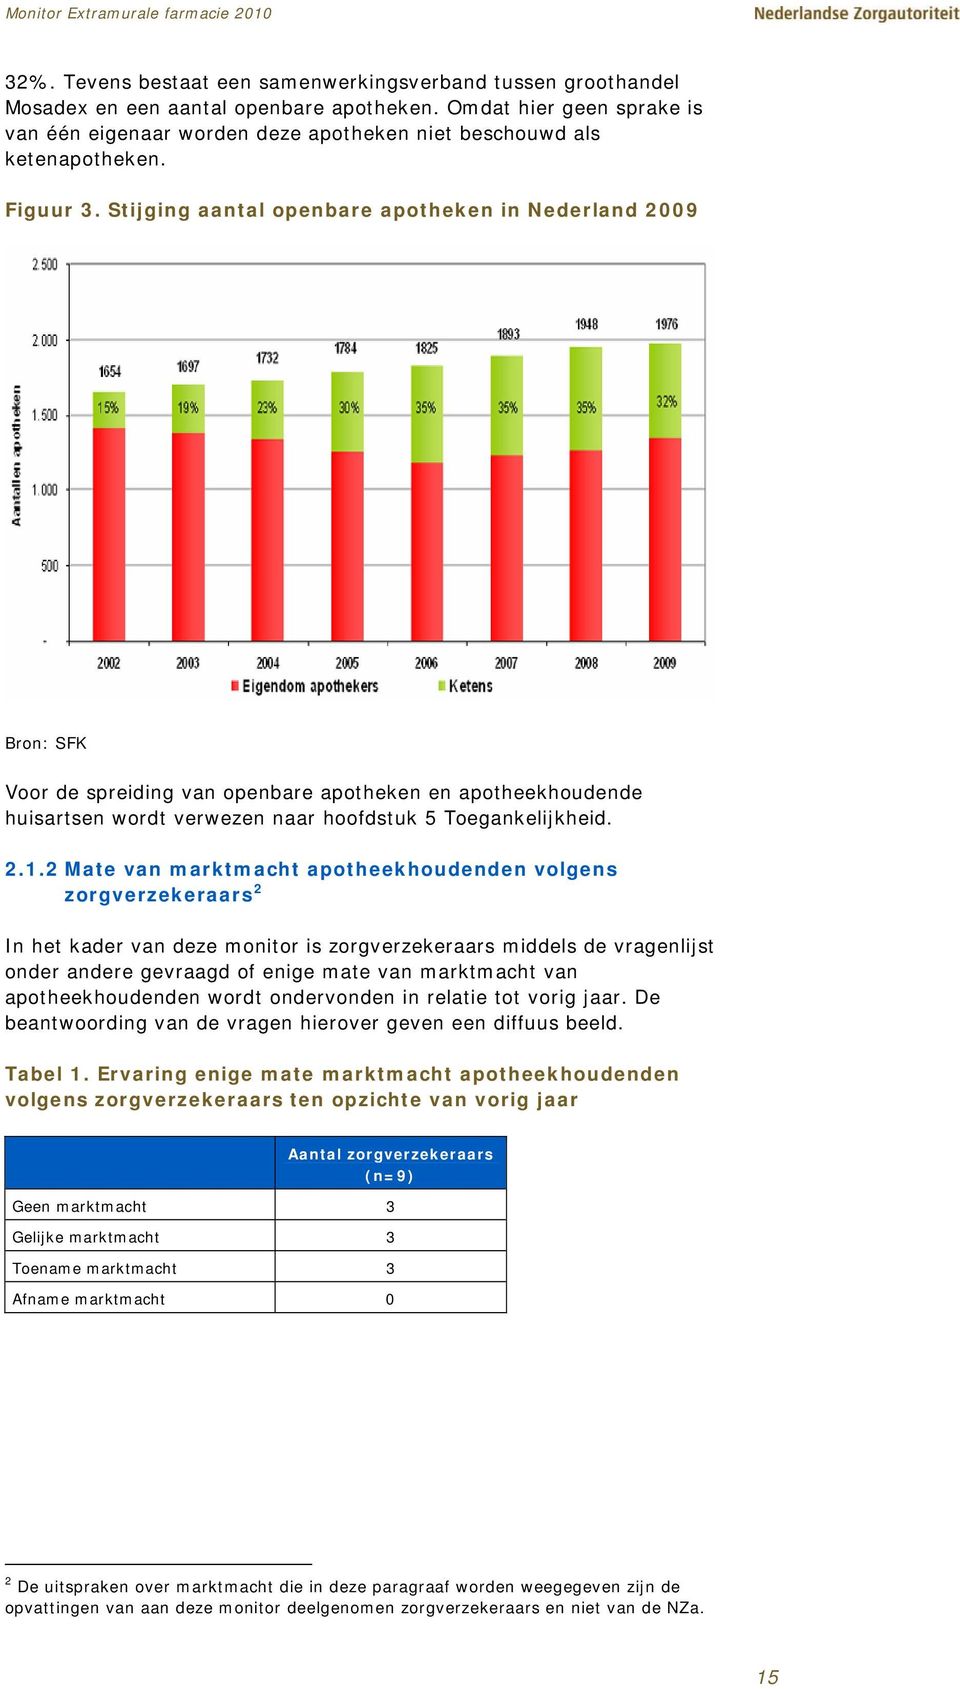 Stijging aantal openbare apotheken in Nederland 2009 Bron: SFK Voor de spreiding van openbare apotheken en apotheekhoudende huisartsen wordt verwezen naar hoofdstuk 5 Toegankelijkheid. 2.1.